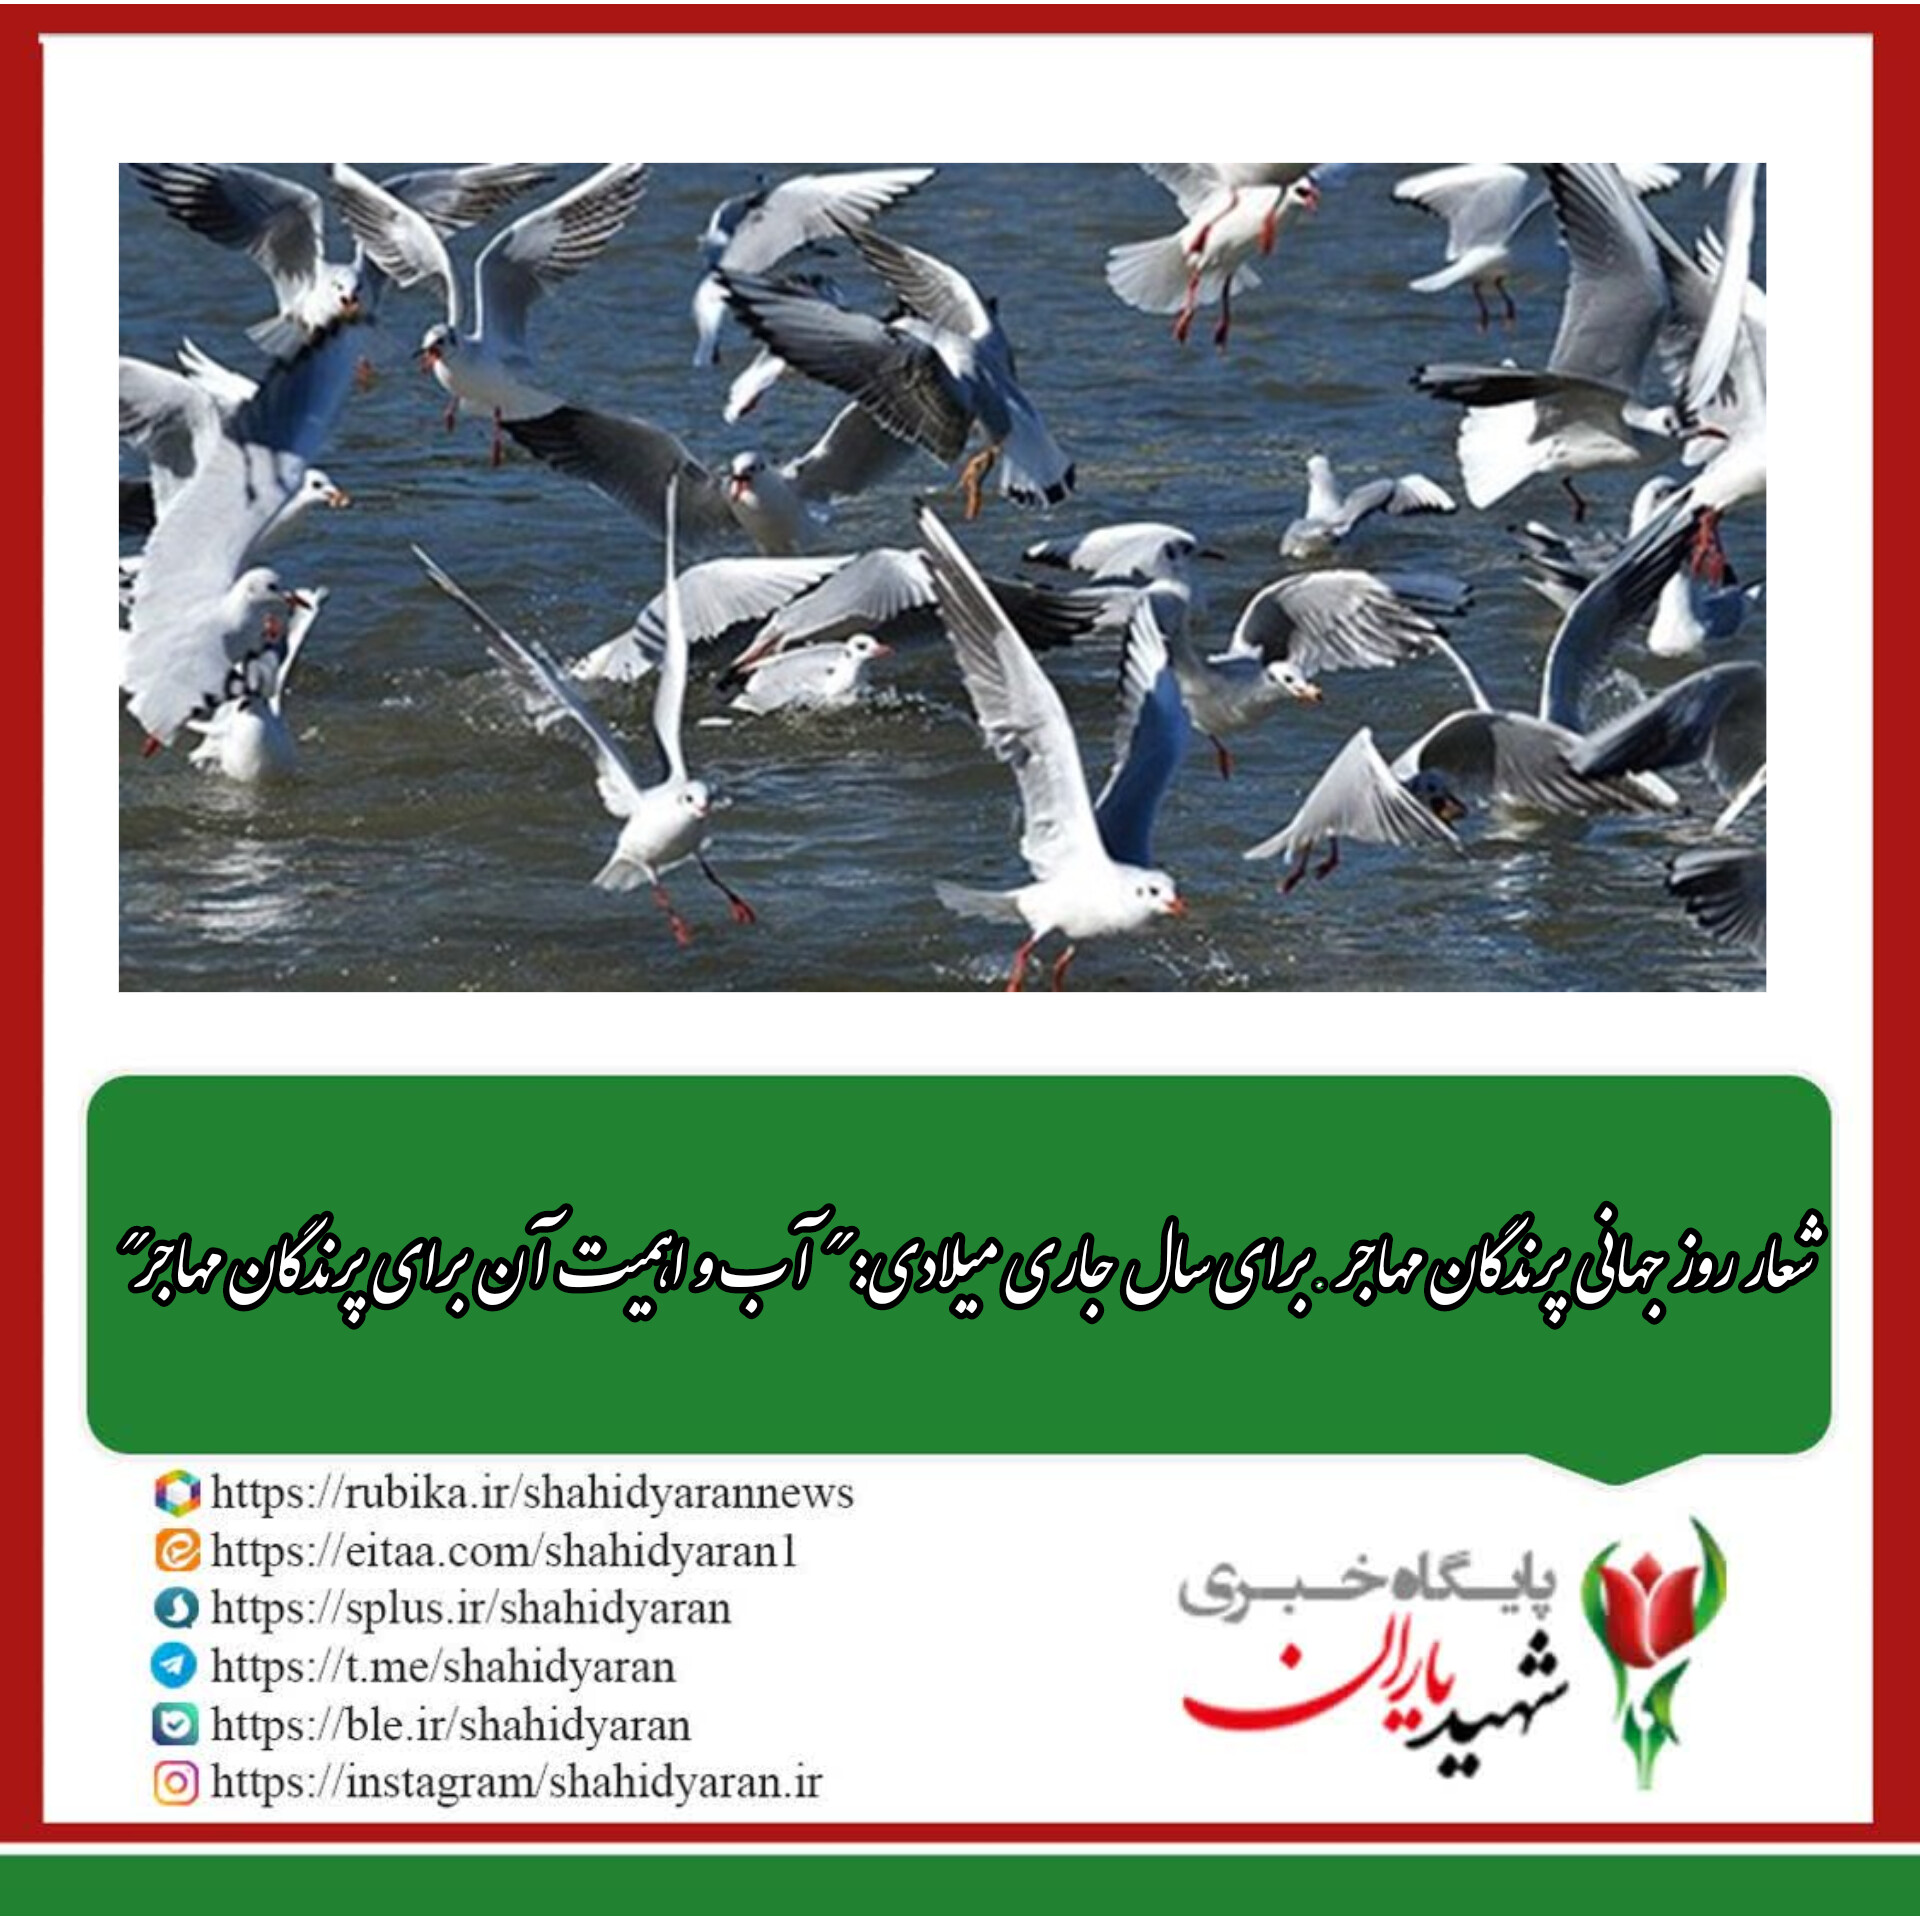 به مناسبت روز جهانی پرندگان مهاجر؛